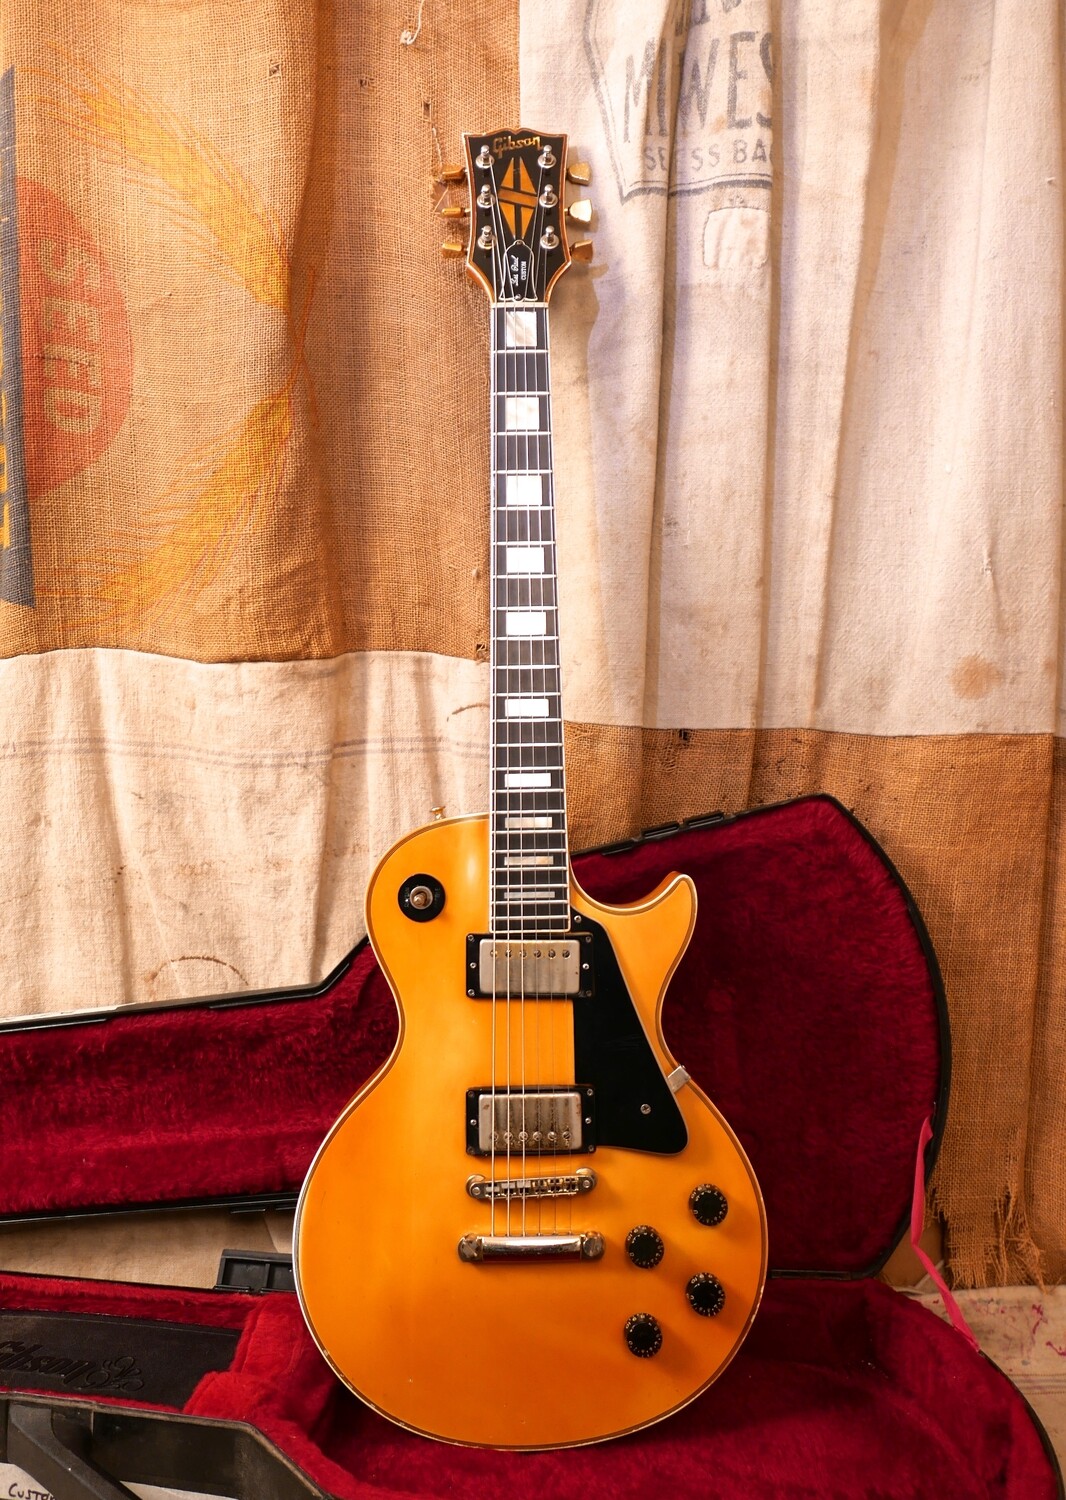 1979 Gibson Les Paul Custom White